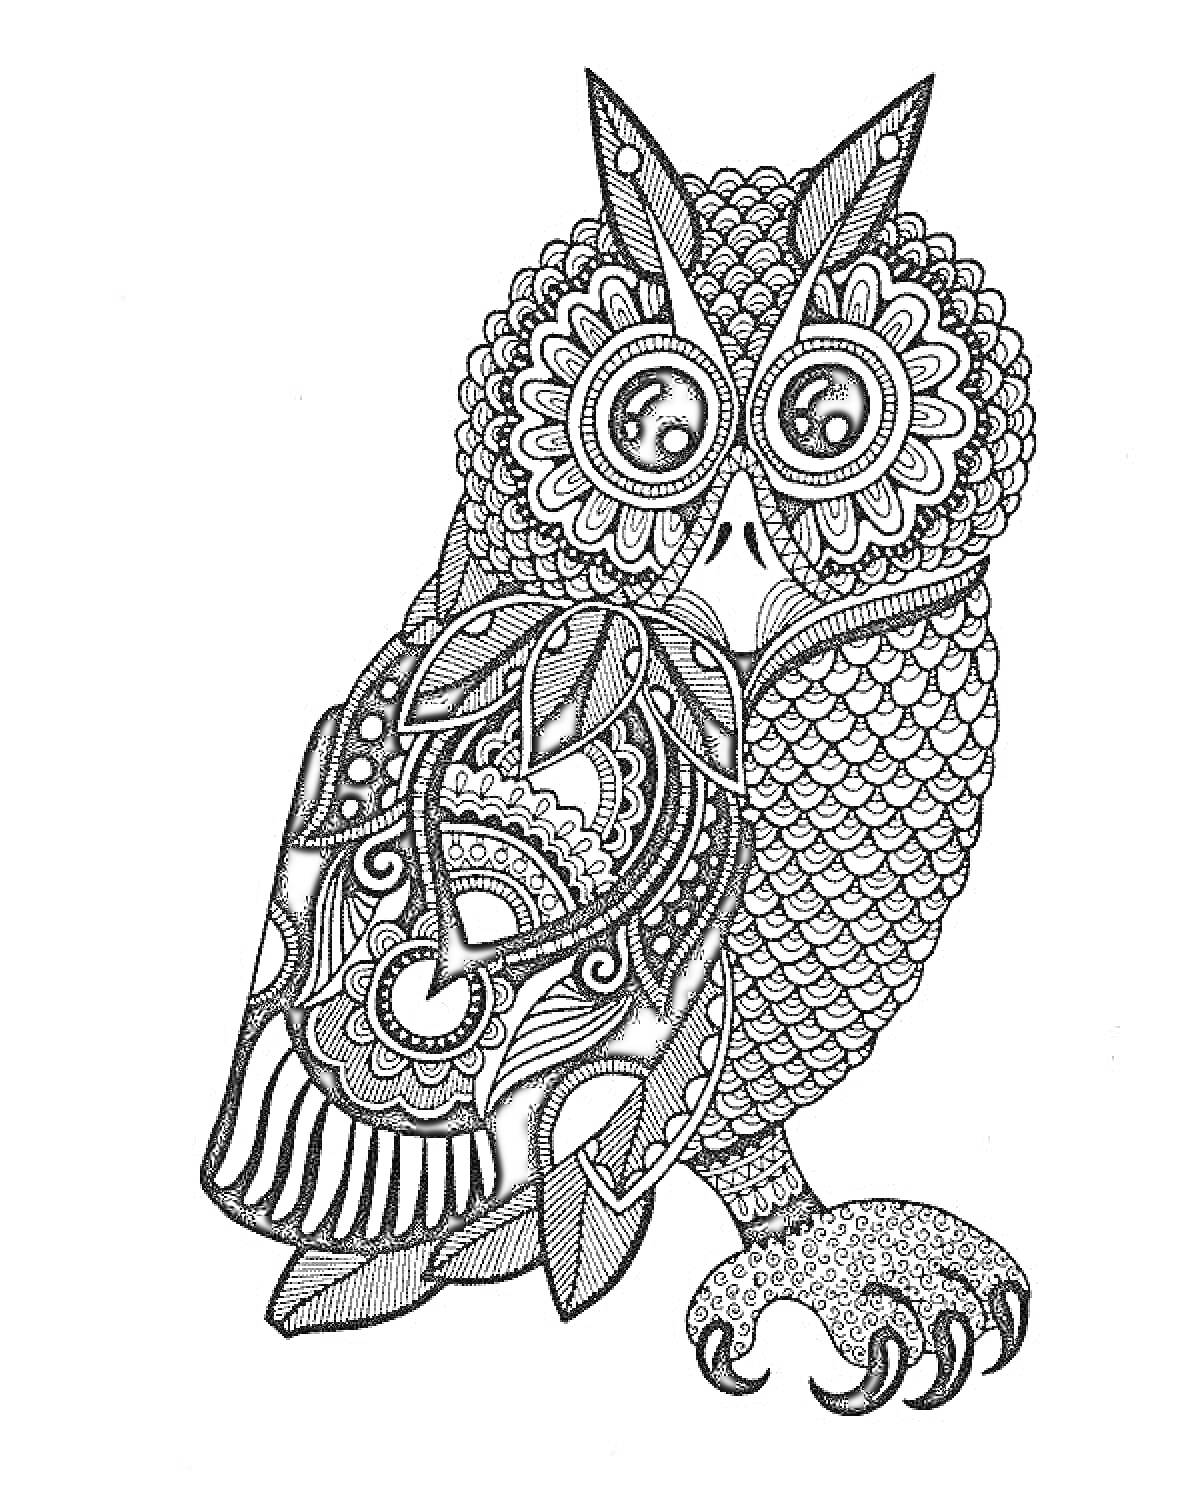 Антистресс раскраска - Сова с художественным орнаментом, декоративные перья, крупные глаза, замысловатый узор